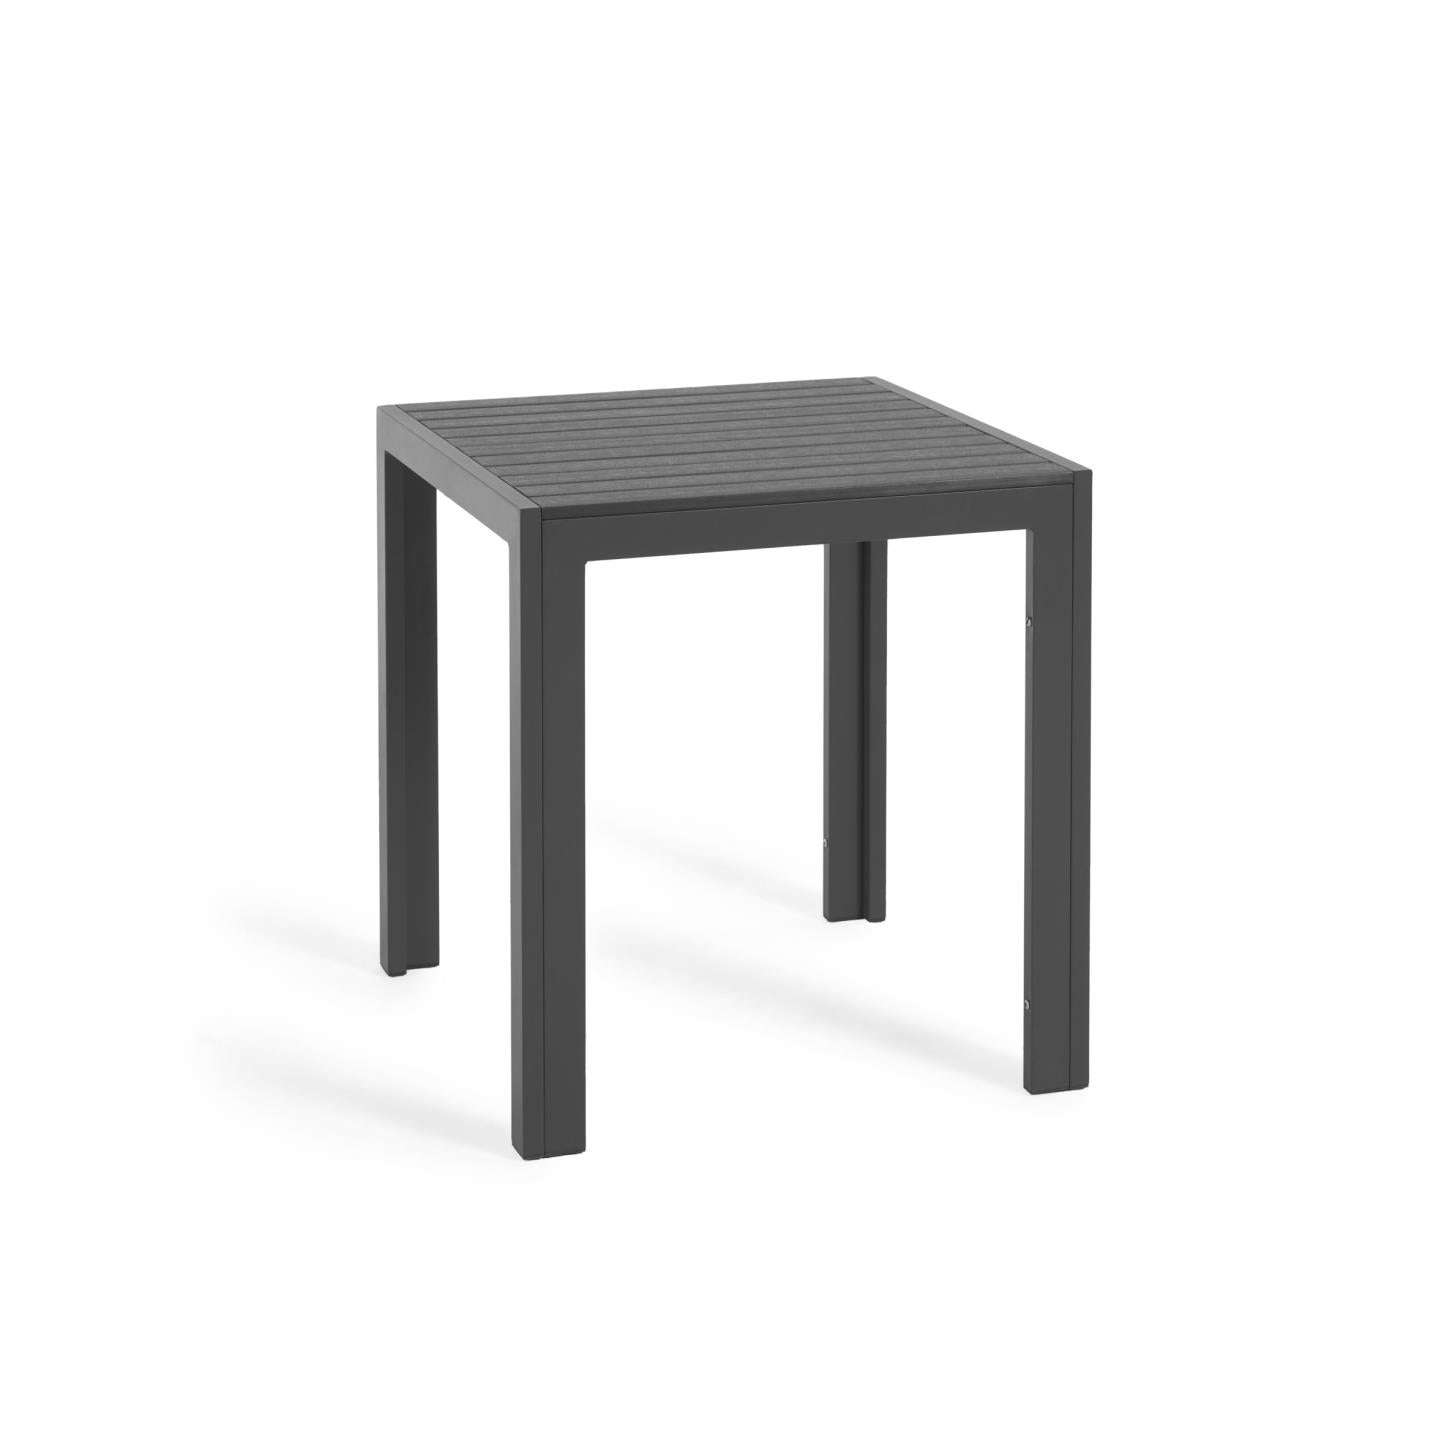 Sirley kültéri asztal, fekete alumínium, 70 x 70 cm